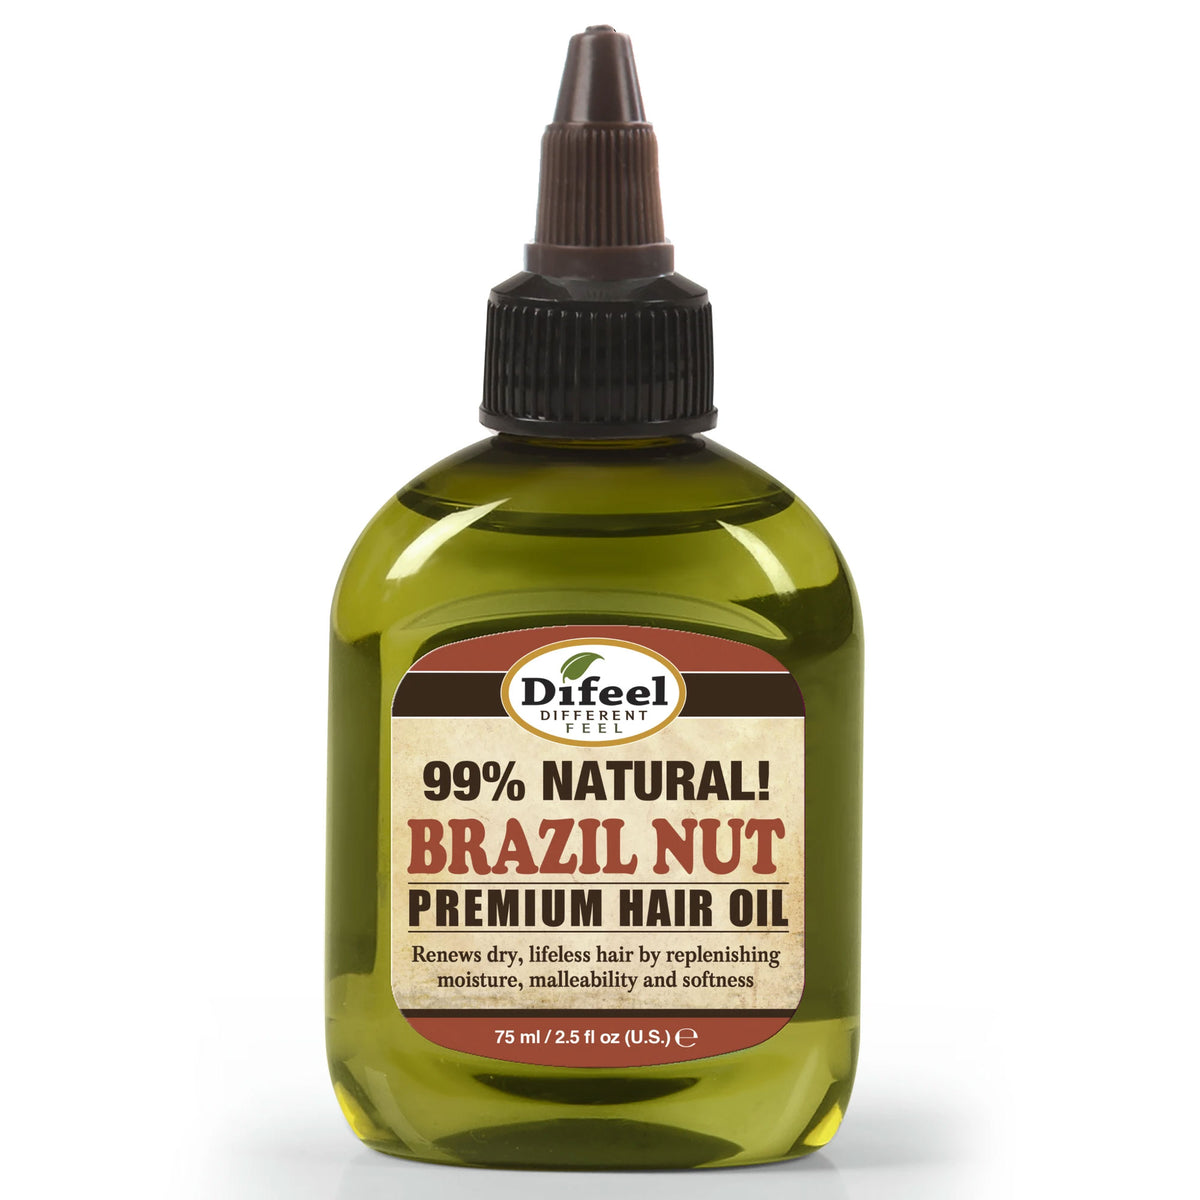 Difeel 99% Natural Blend! Brazil Nut Premium Hair Oil - 2.5 oz